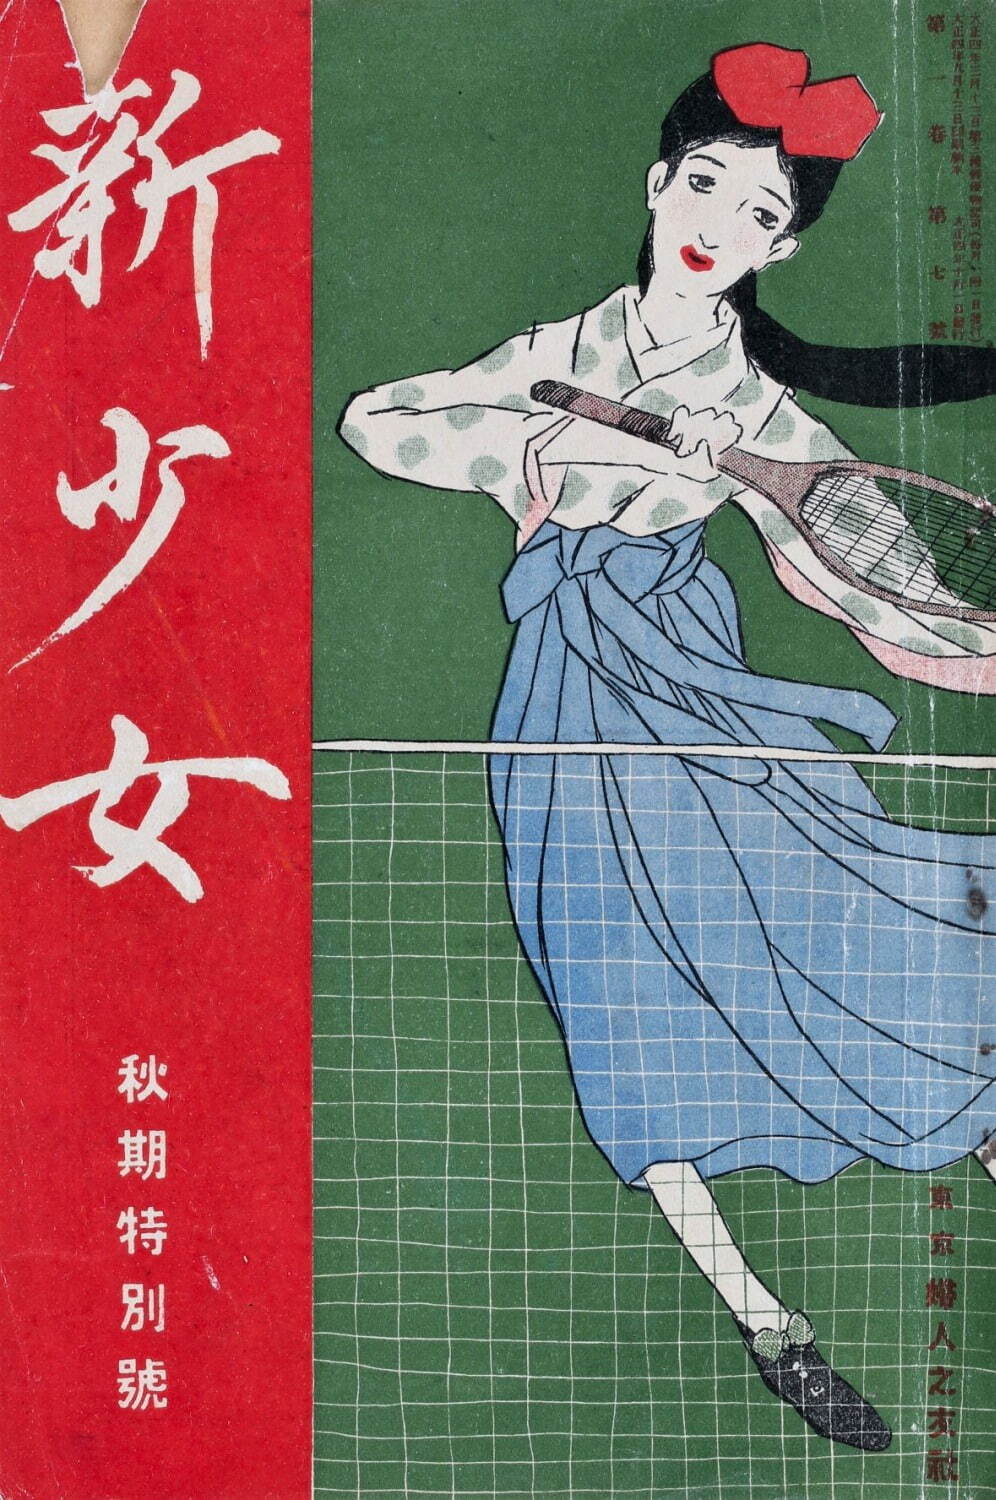 竹久夢二・画 『新少女』秋期特輯号 表紙「テニス」1915年(大正4)